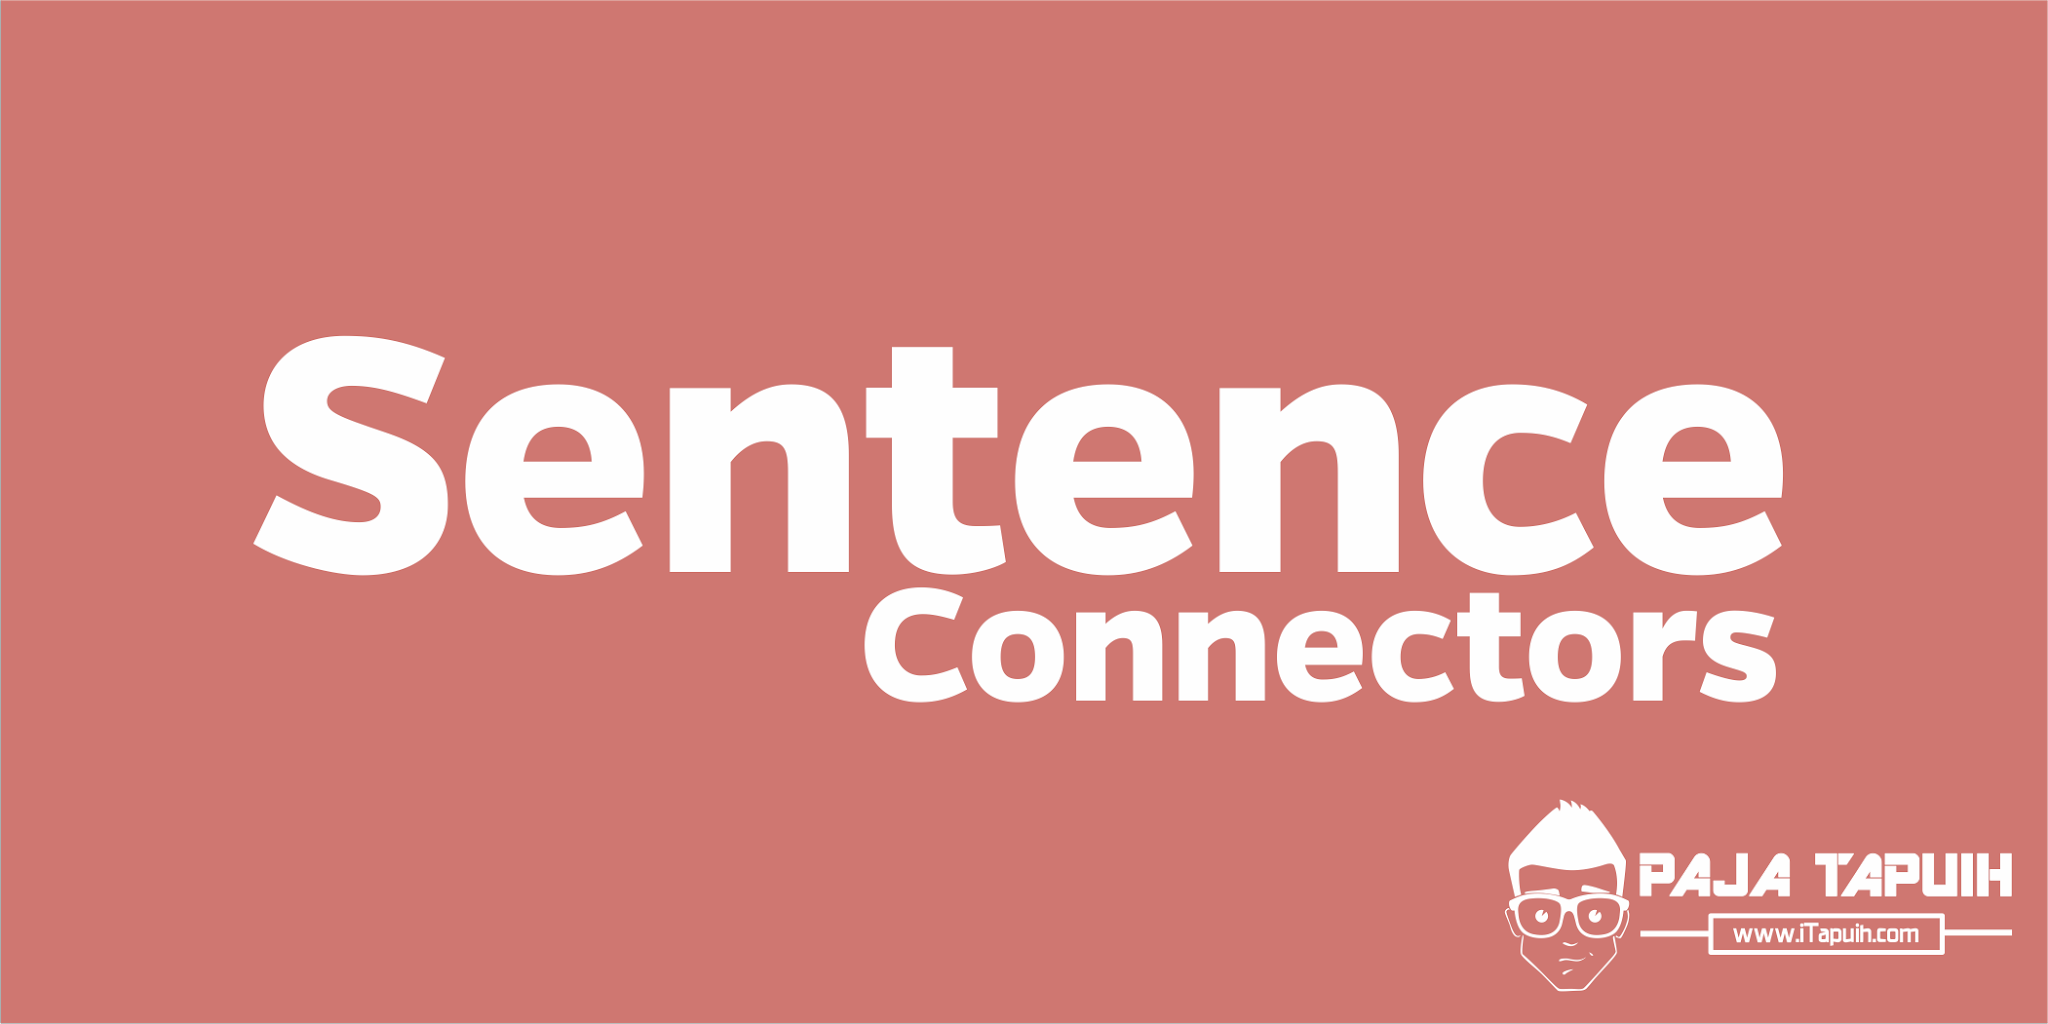 Penjelasan dan Daftar Sentence Connectors Dalam Bahasa Inggris